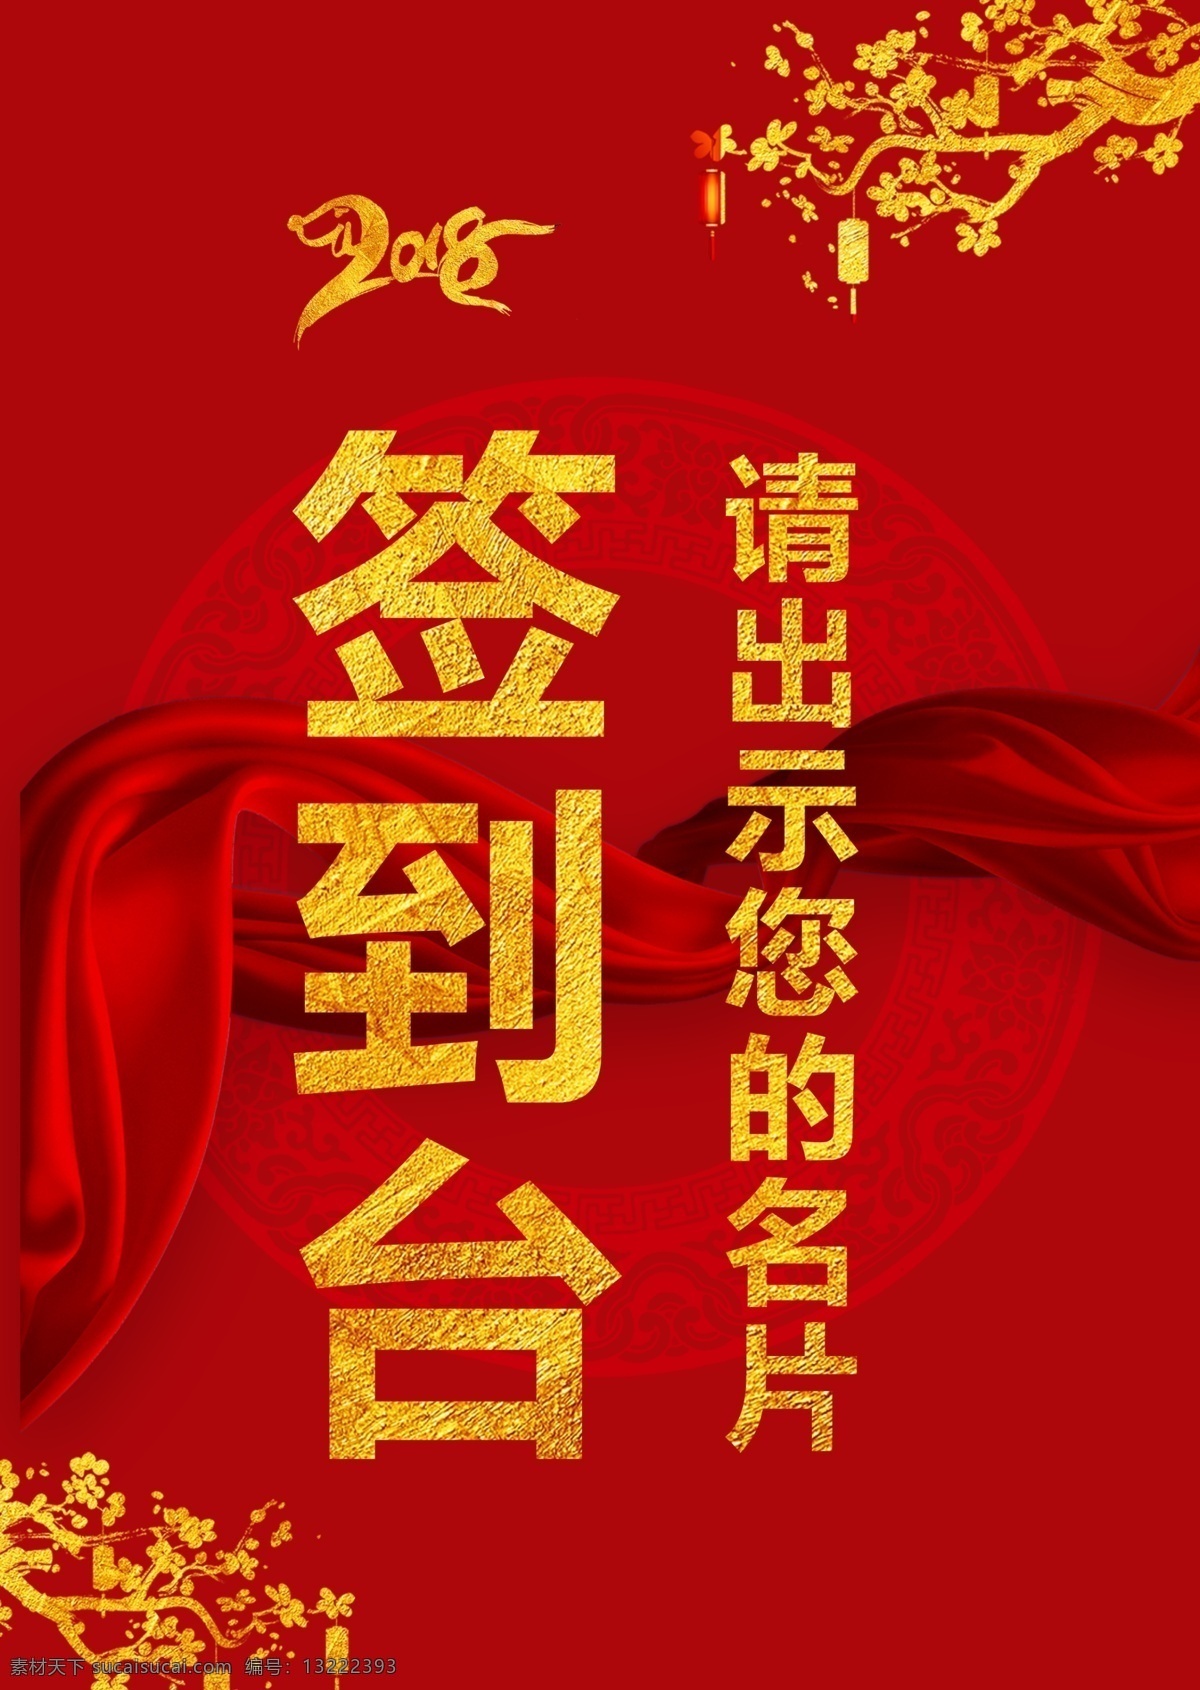 中国 古典 风格 年会 活动 签到 台 板 桌牌 卡通 名片 丝绸 新年快乐 签到台 签到板 设计模板 手绘风格 狗年 新年活动 名牌 2018